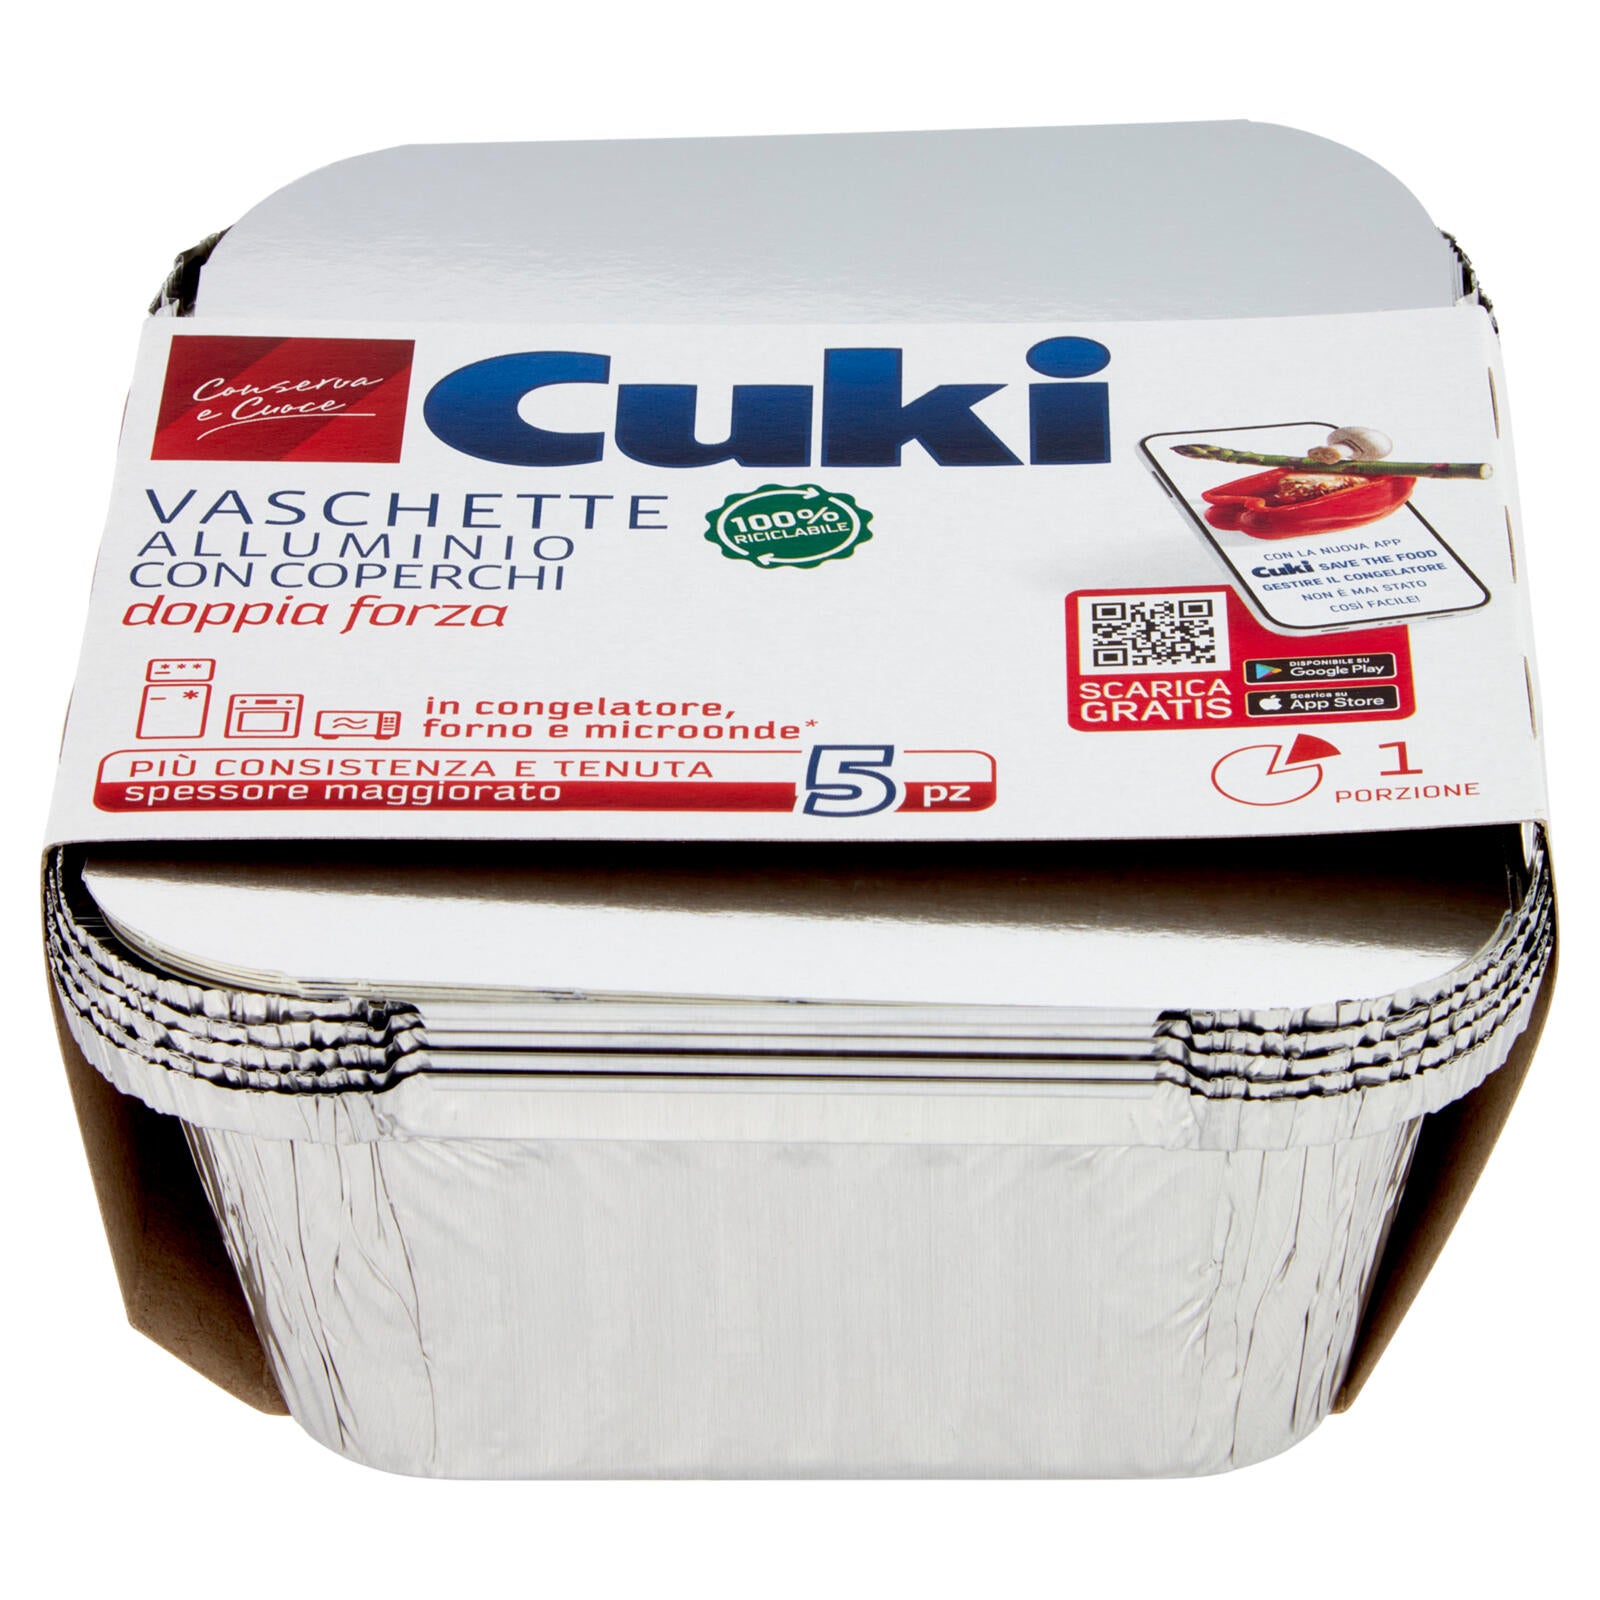 Cuki Conserva e Cuoce Vaschette Alluminio con Coperchi doppia forza 1 Porzione 5 pz